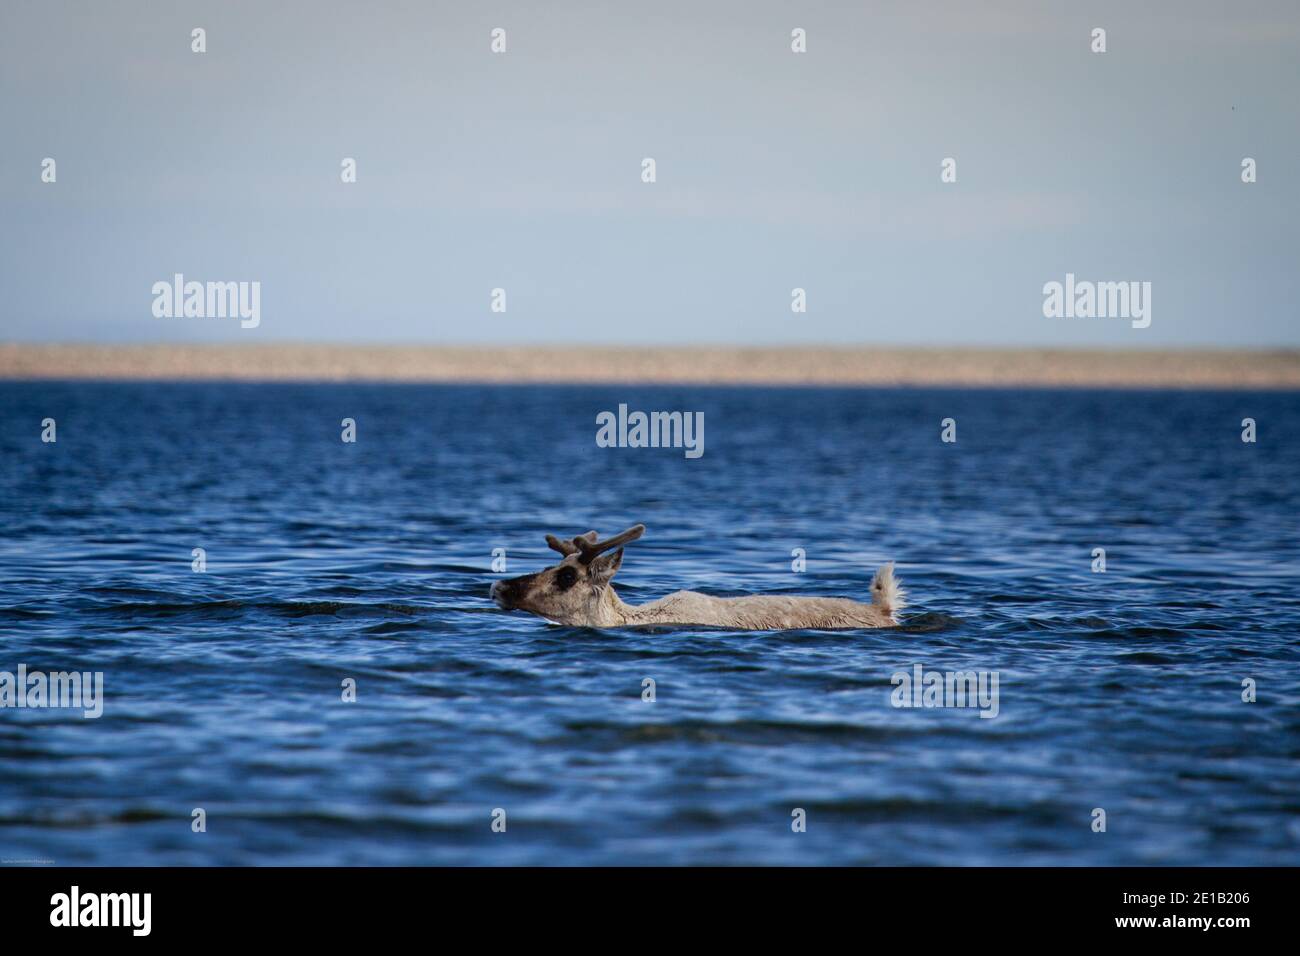 rangifer tarandus groenlandicus, jeune caribou de la toundra, nageant dans l'eau près d'Arviat Nunavut Banque D'Images